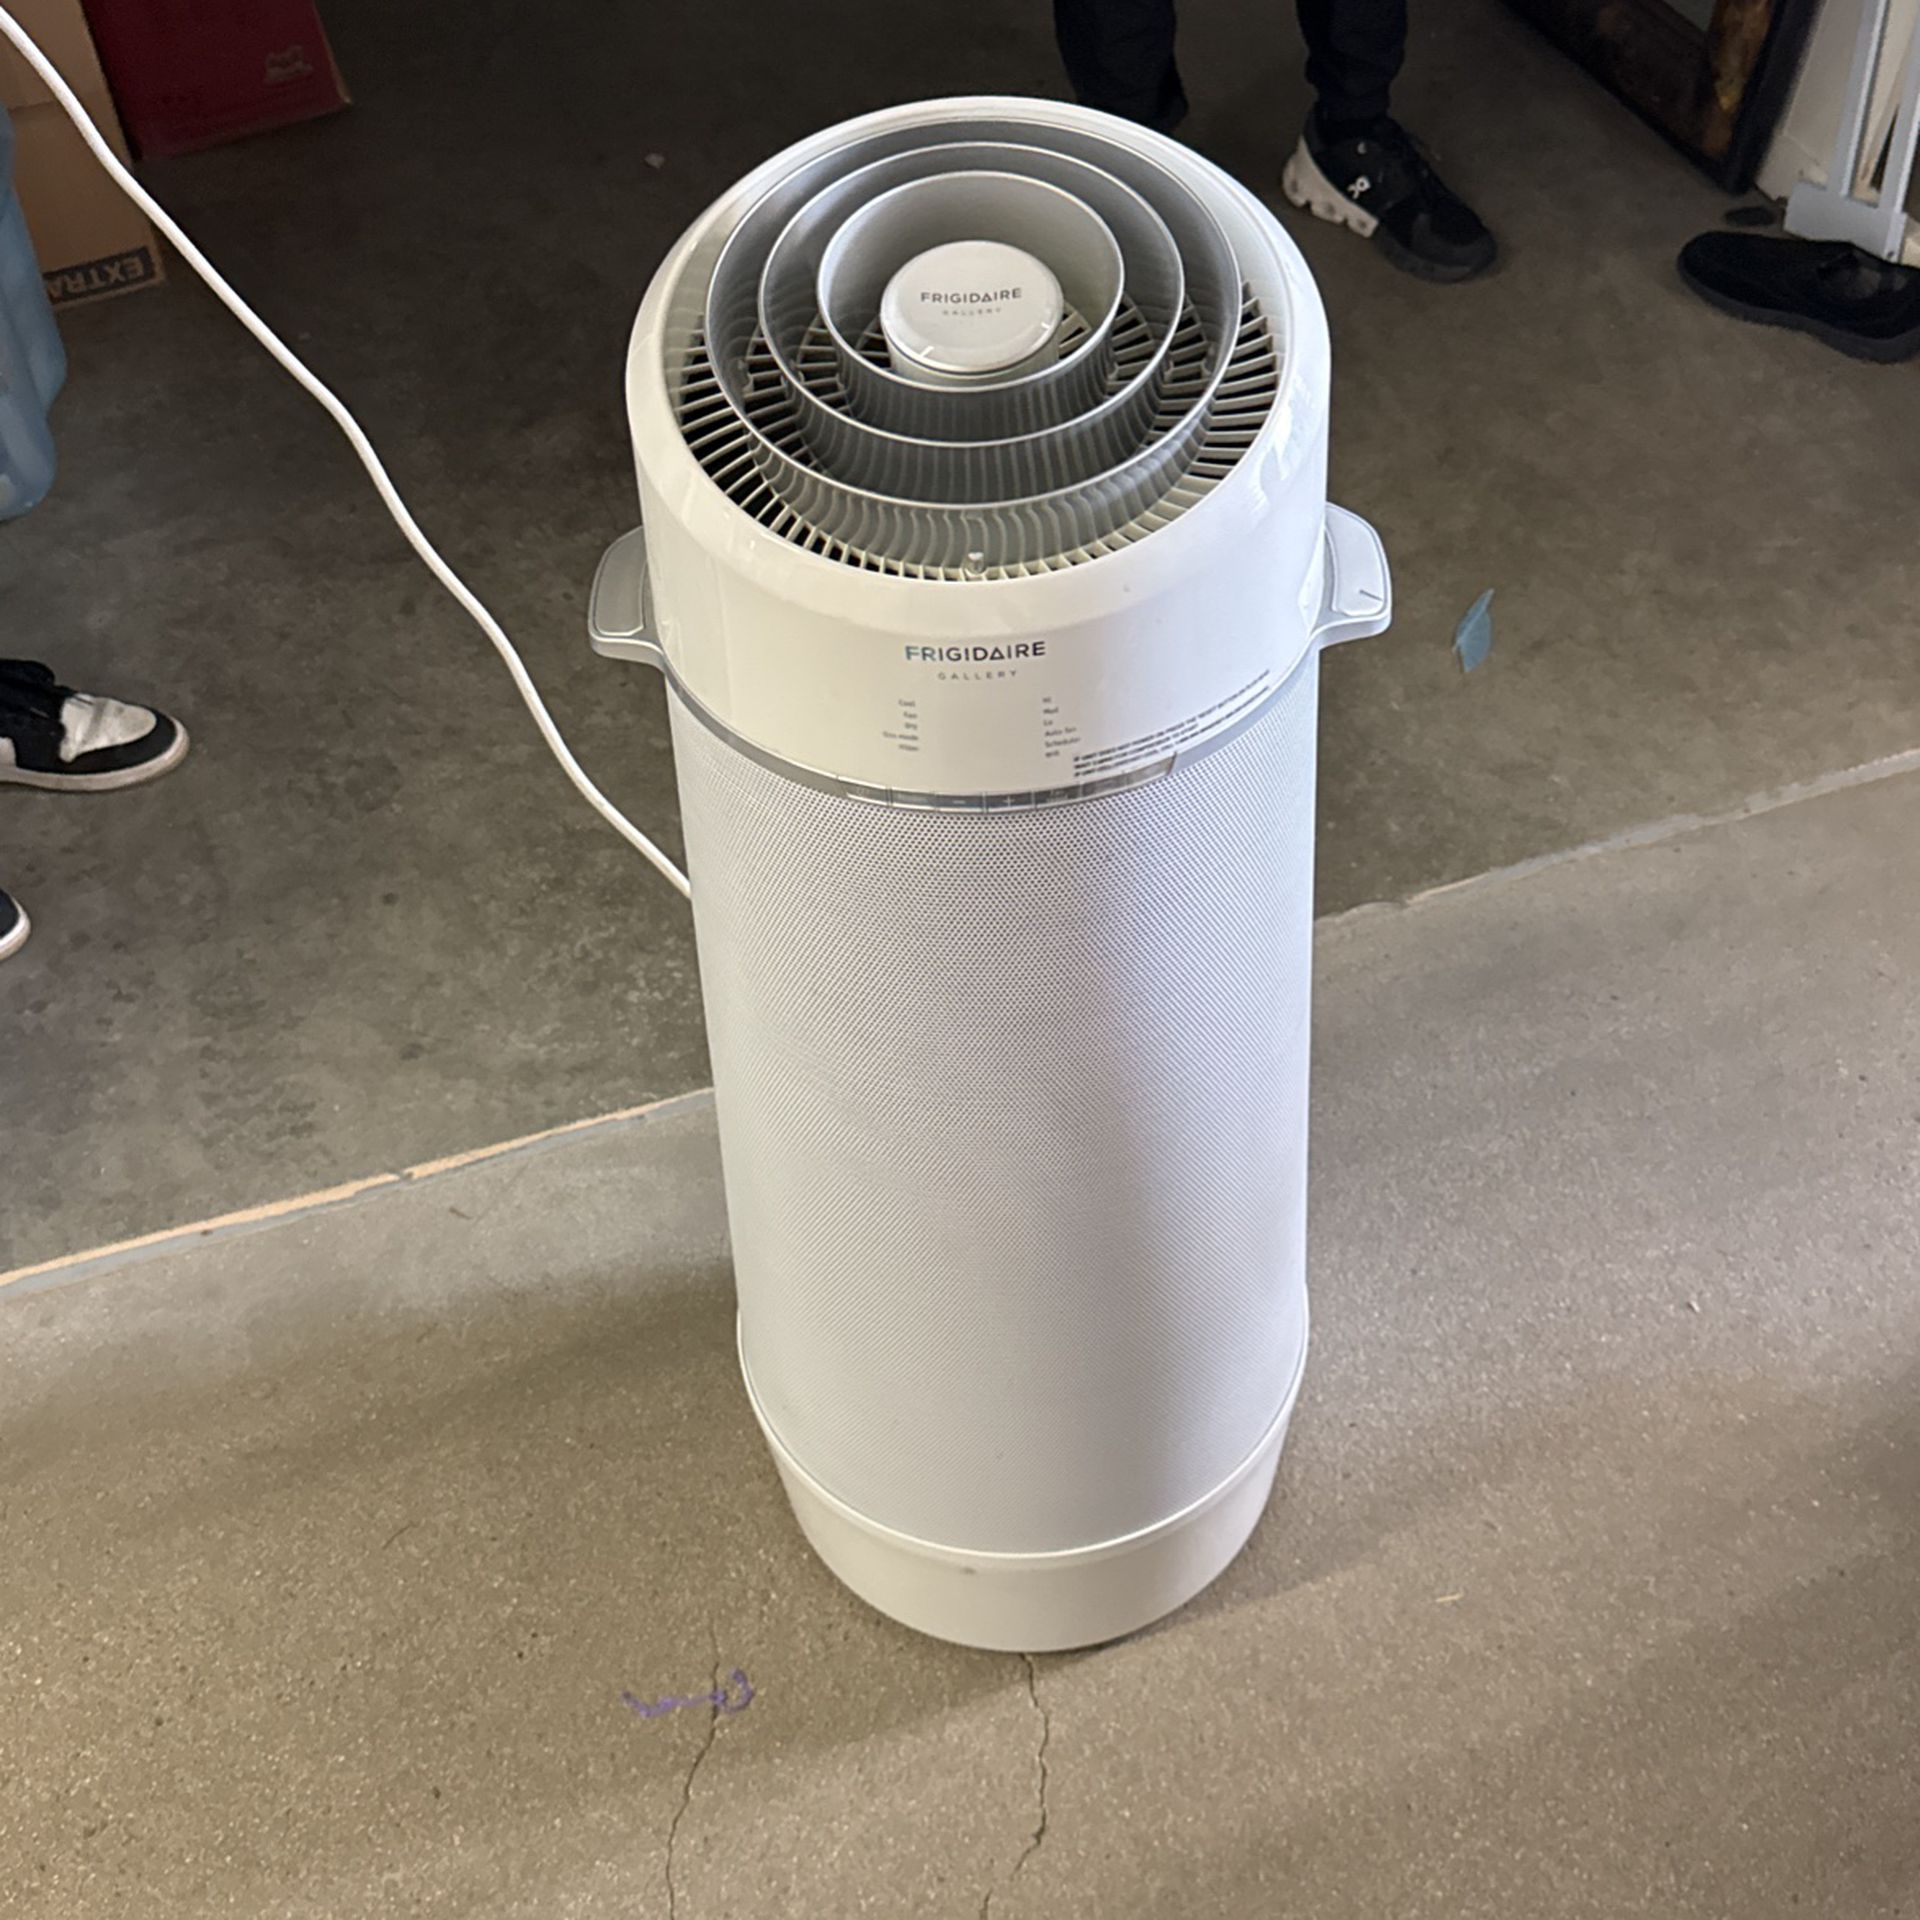 Portable Air conditioner Fridgeaire